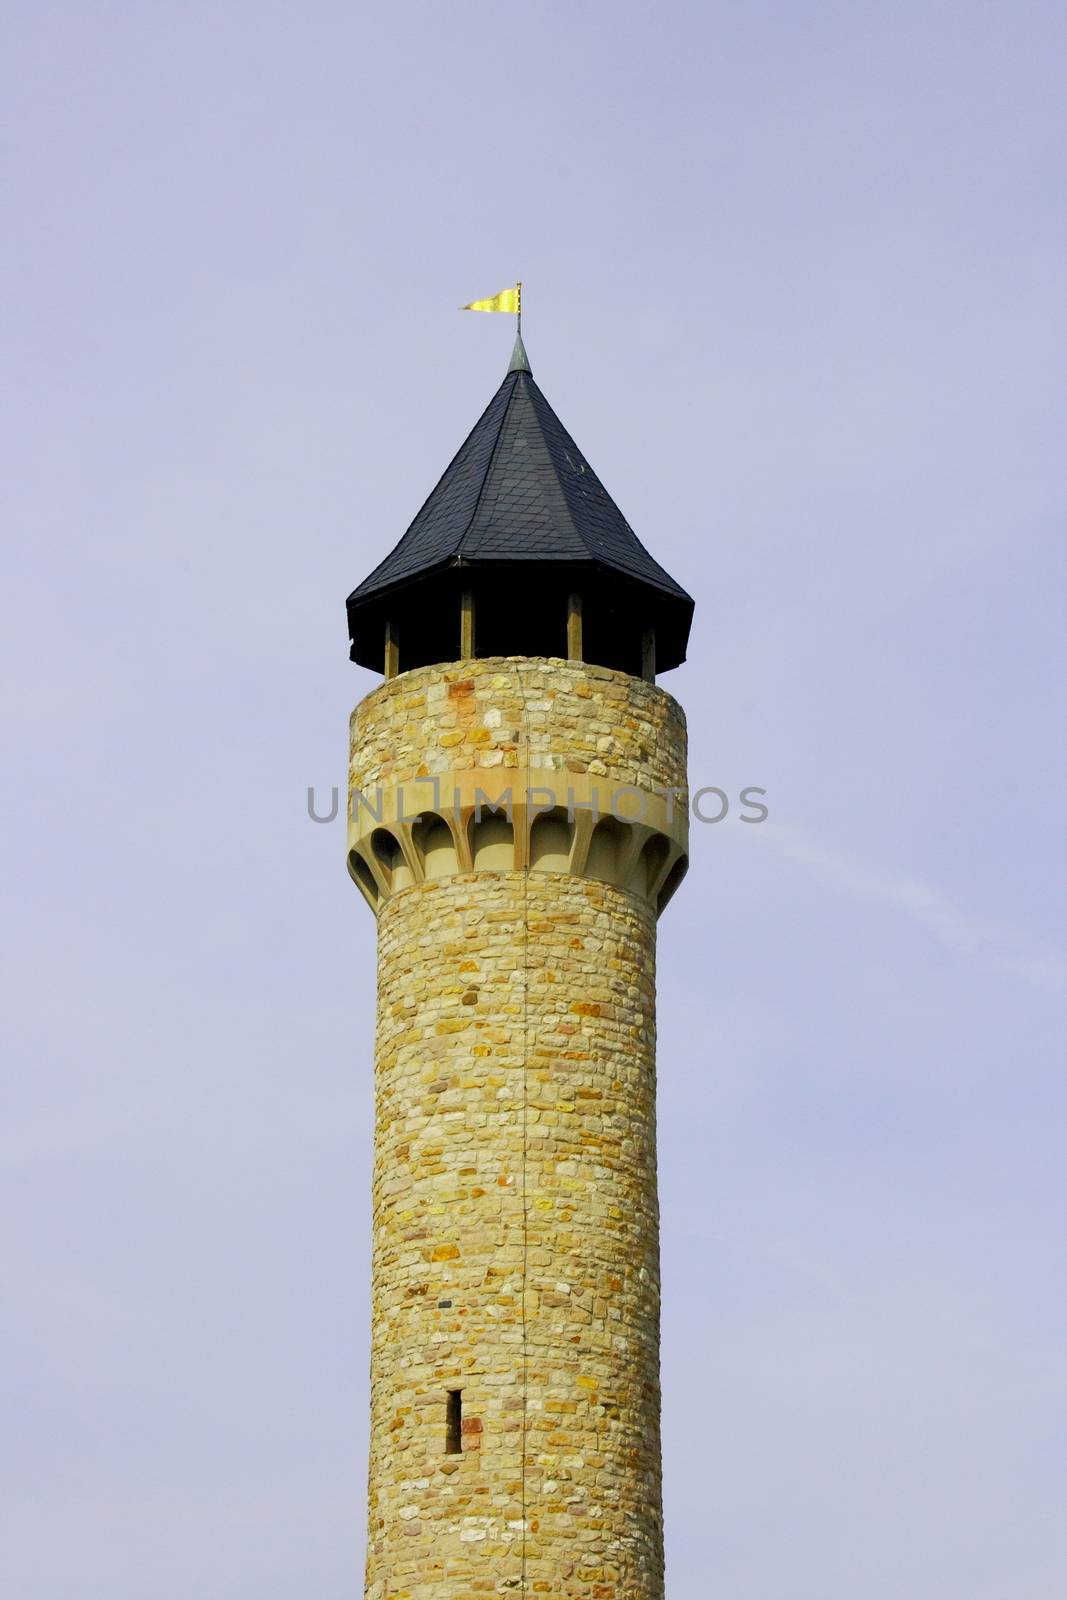 The Wartburg Castle tower in Freimersheim, Germany    der Wartburgturm bei Freimersheim,Deutschland